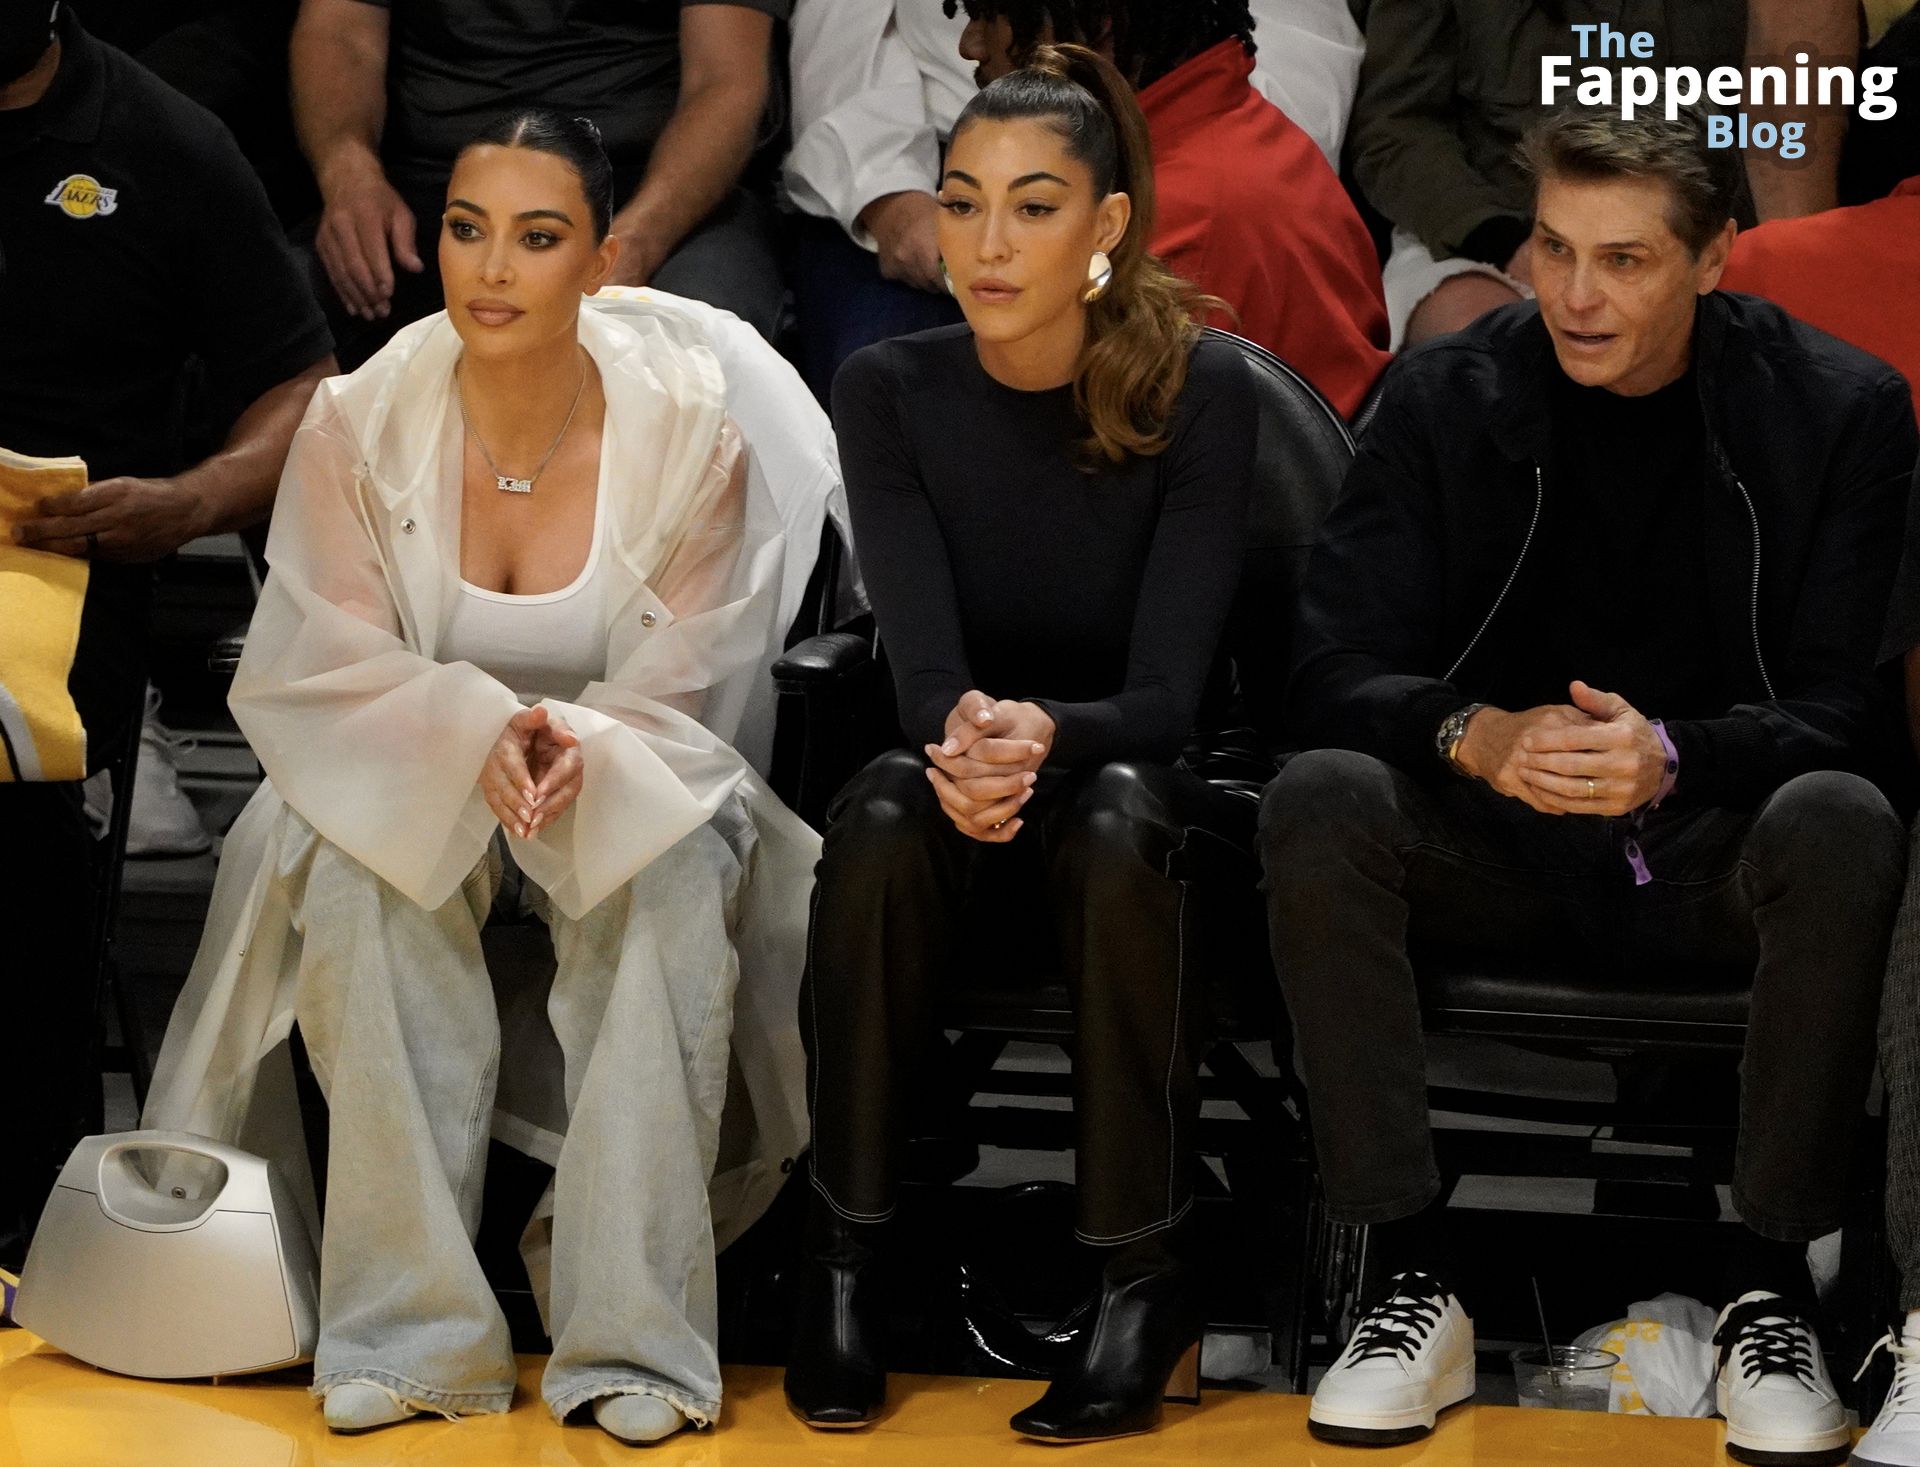 Kim-Kardashian-Sexy-The-Fappening-Blog-18-1.jpg